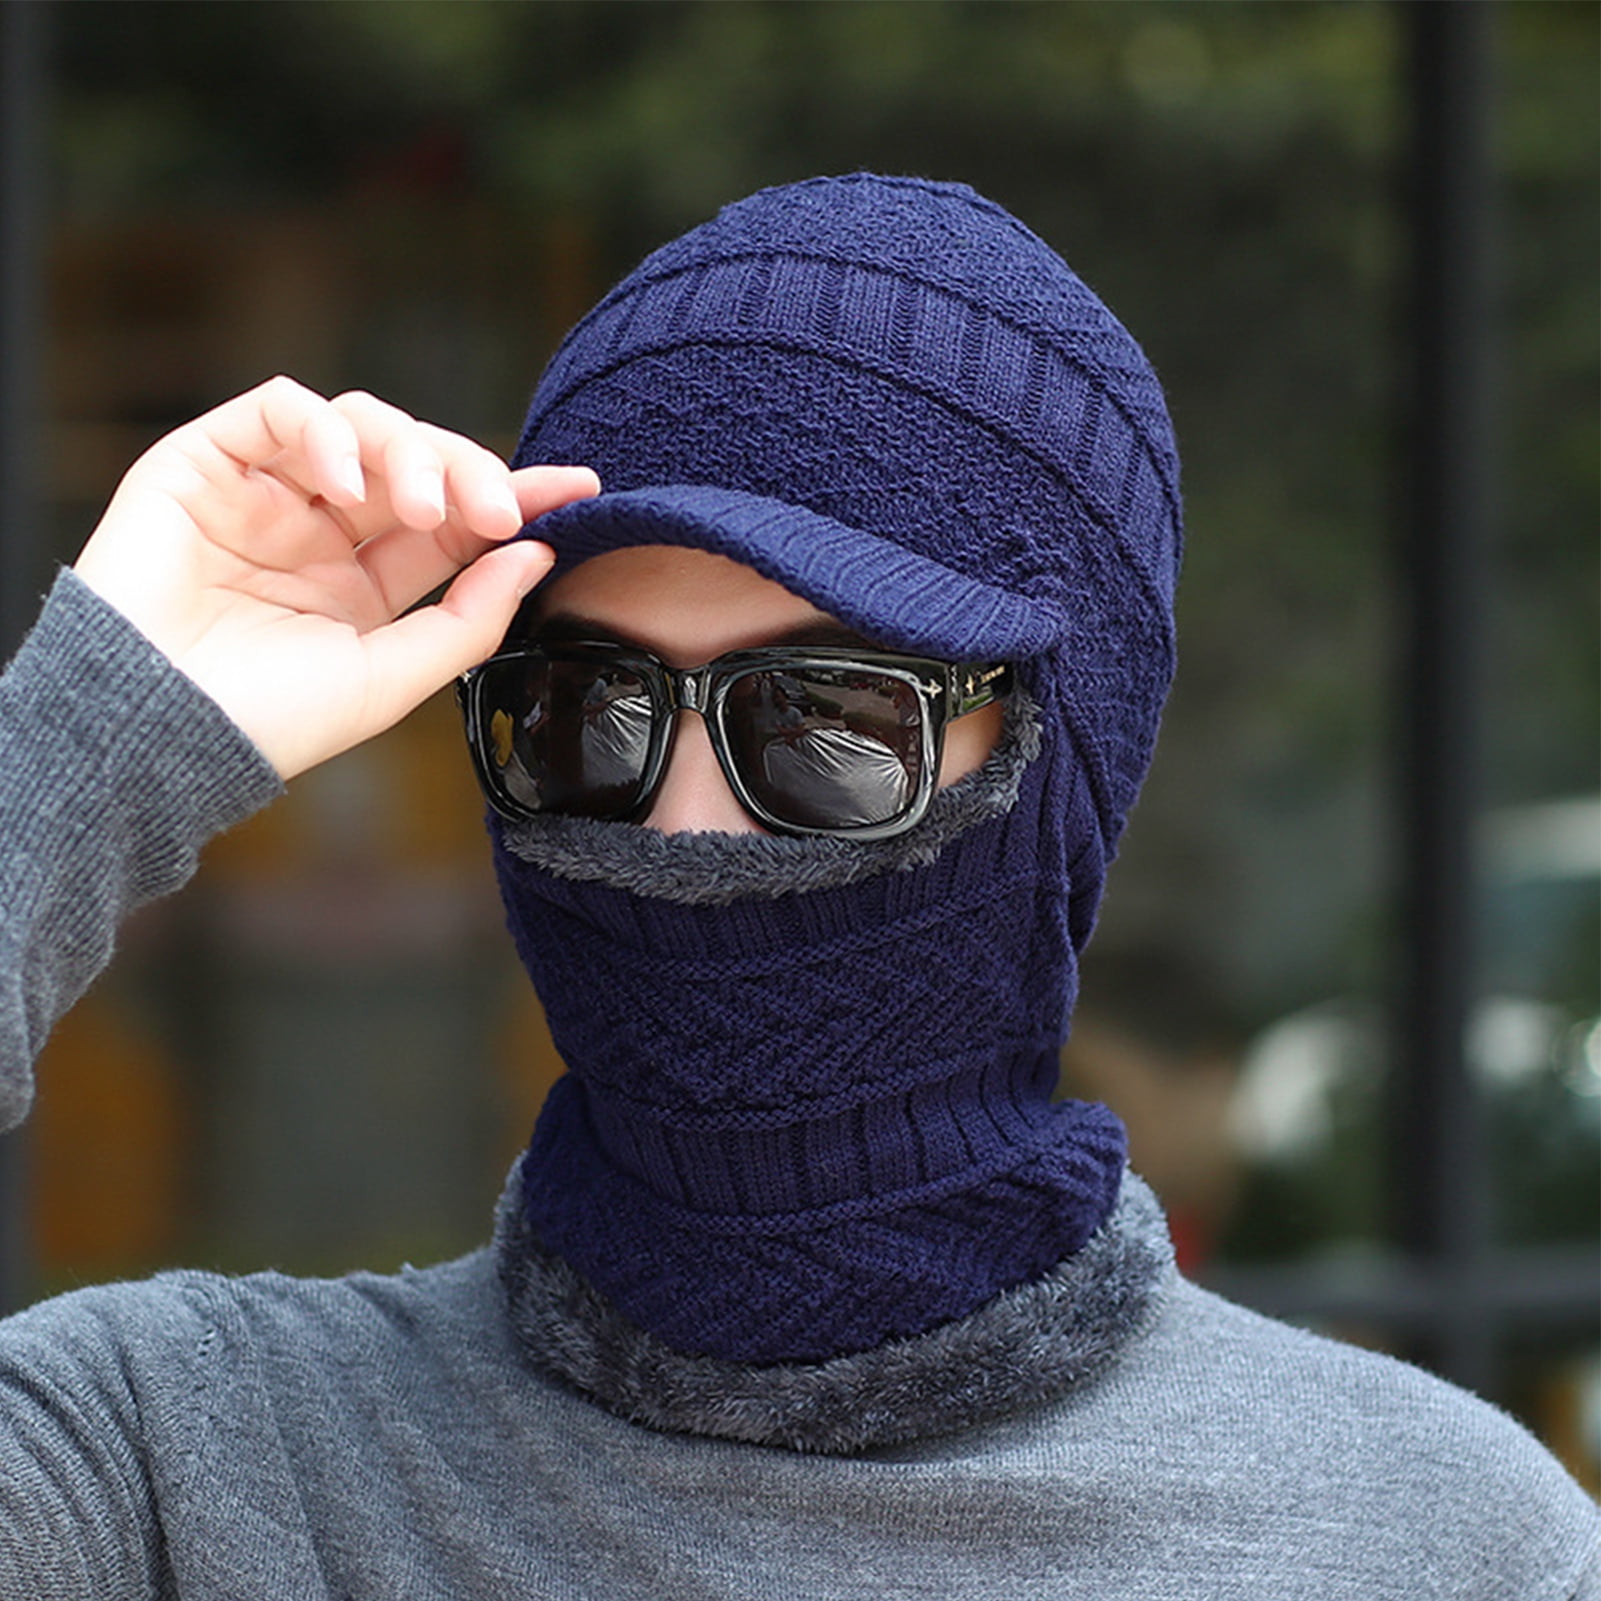 [Die neuesten Artikel im Ausland kaufen] NUZYZ Men Full Winter Hat Knitted Cover Warm Women Balaclava Gaiter Stretchy Neck Face